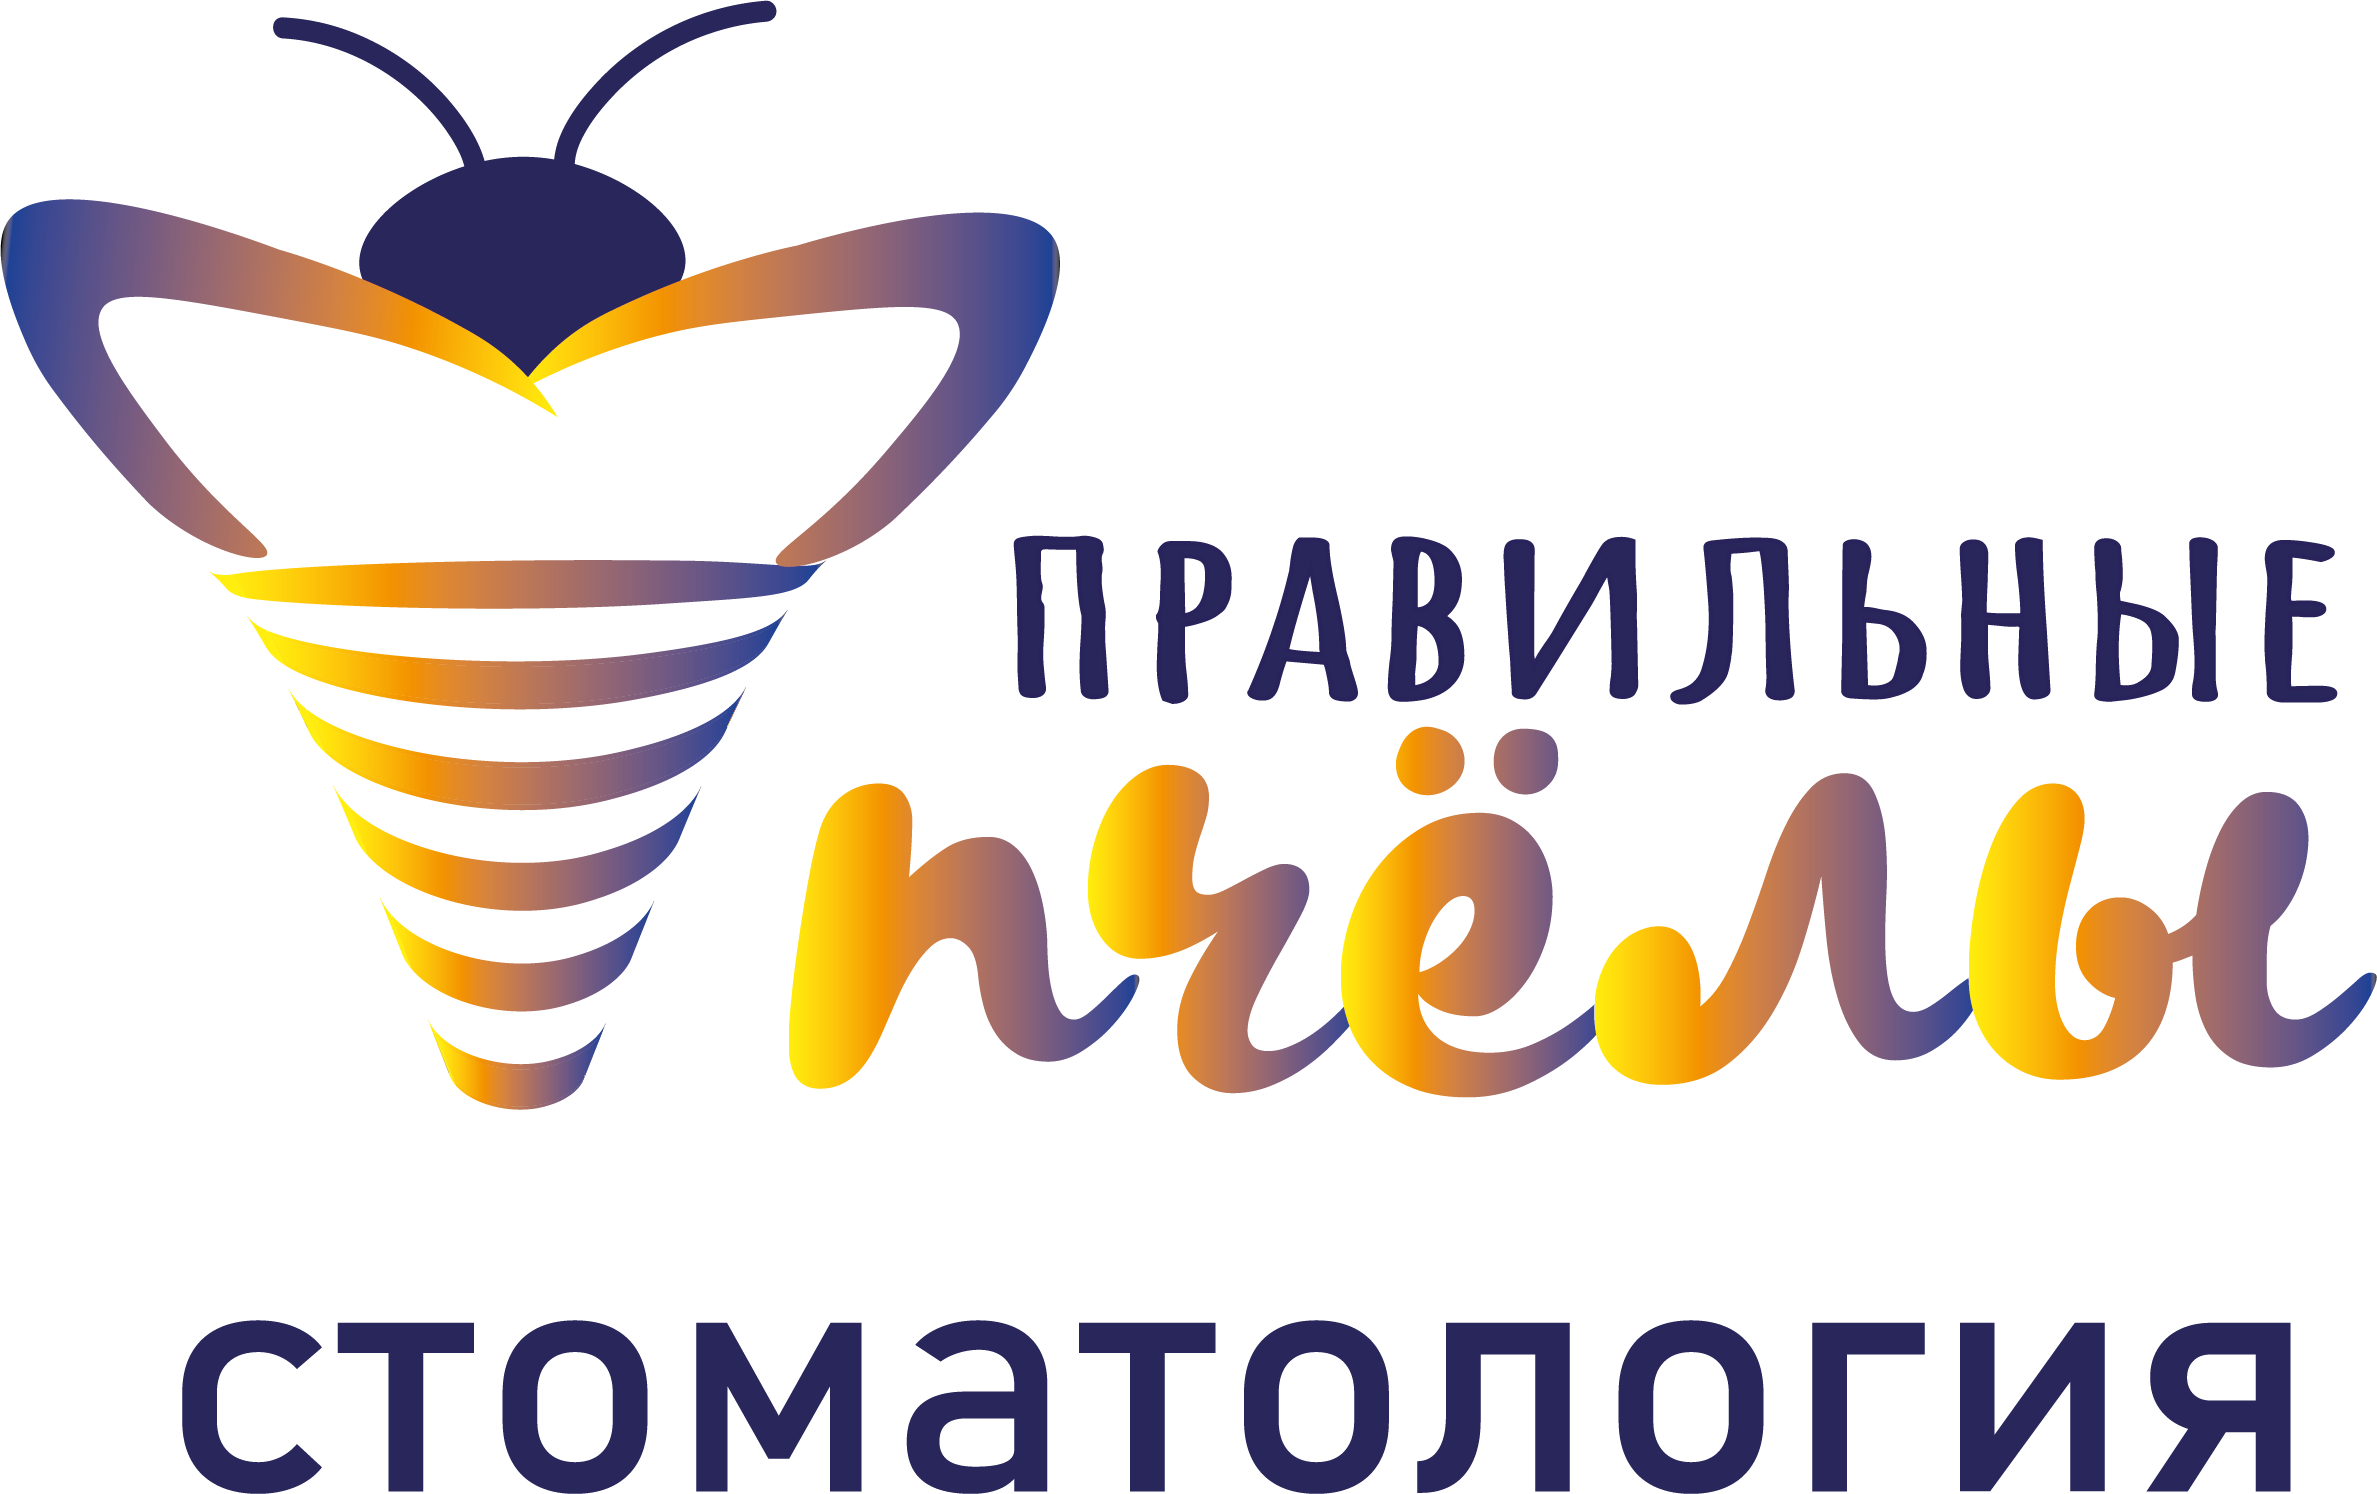 Стоматологический центр Правильные пчелы на улице Игнатьева